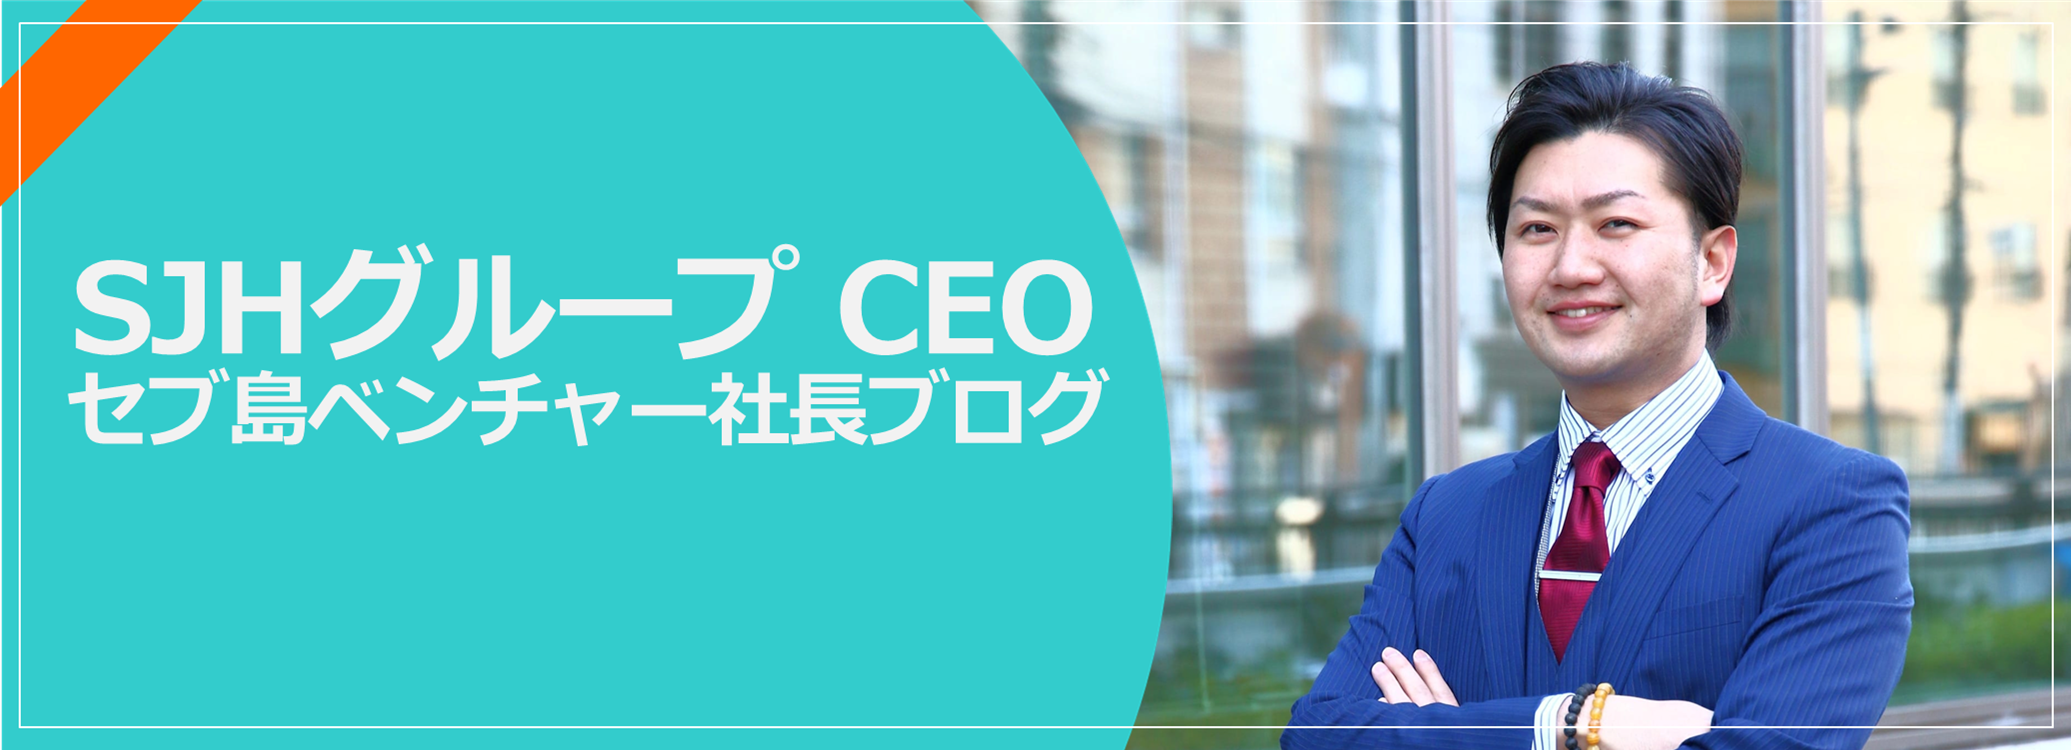 SJHグループ CEOブログ 寺本雄平 セブ島ベンチャー社長 | 株式会社ストロングジャパンホールディングス